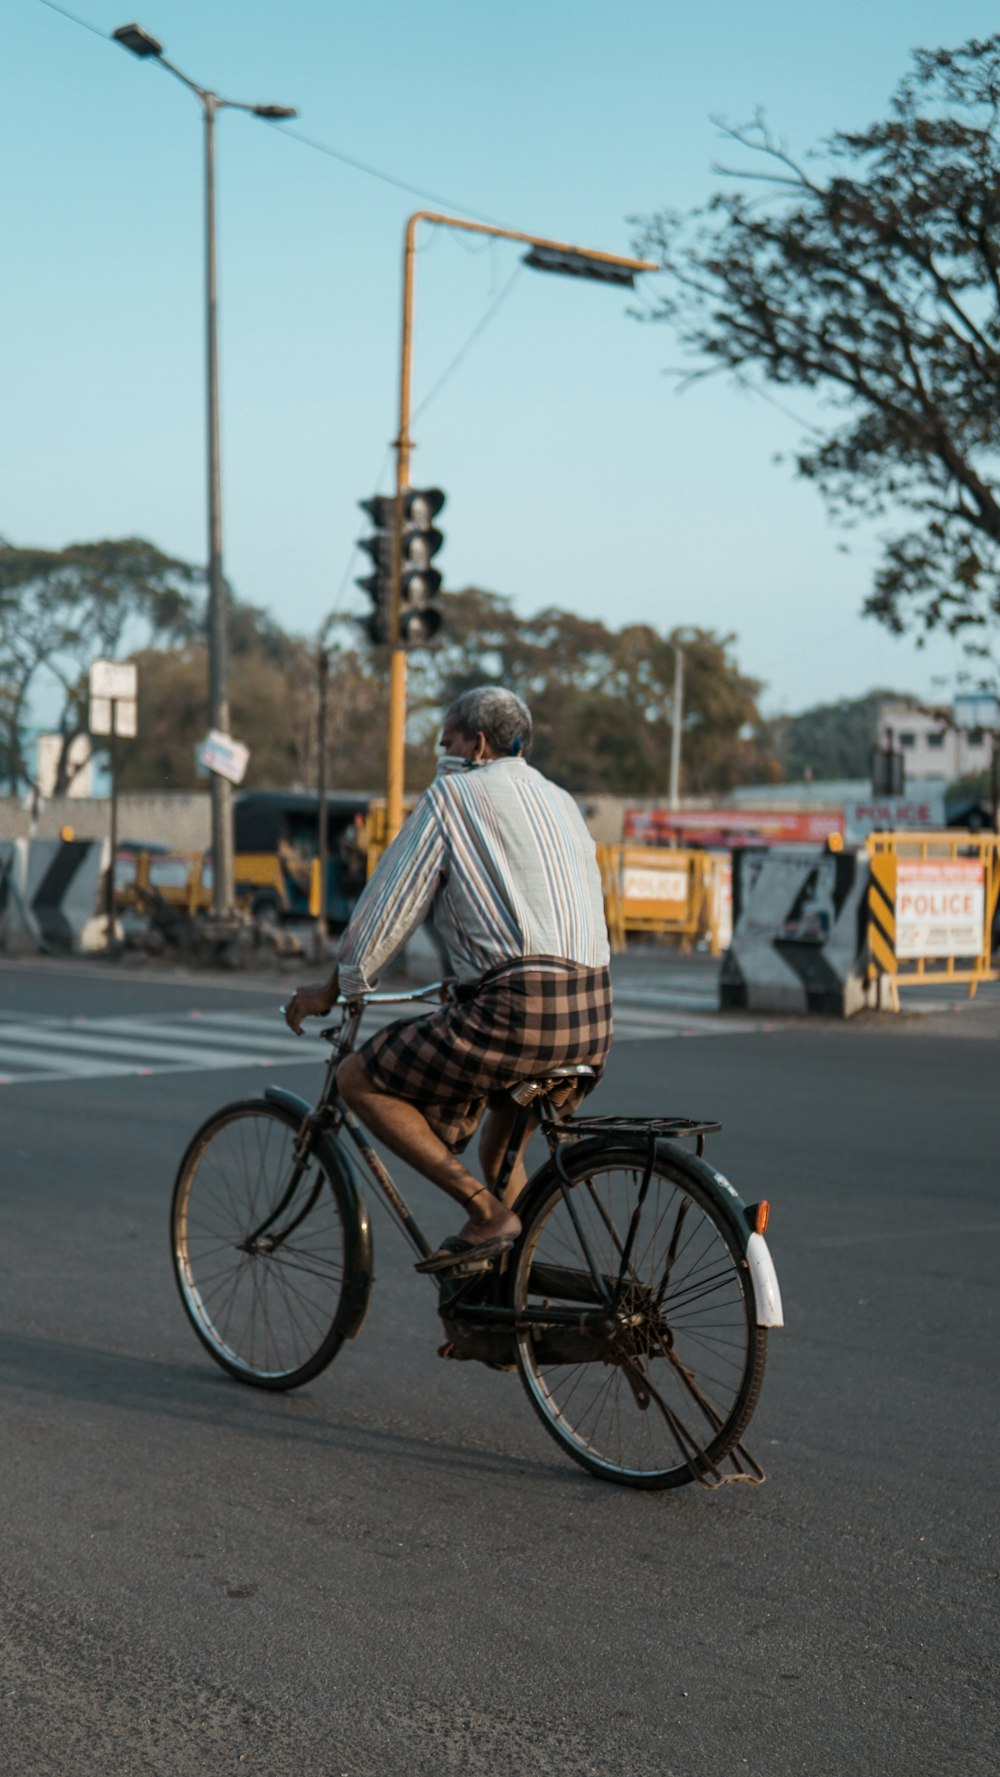 homem na camisa social xadrez branca e marrom que monta na bicicleta preta da cidade durante o dia